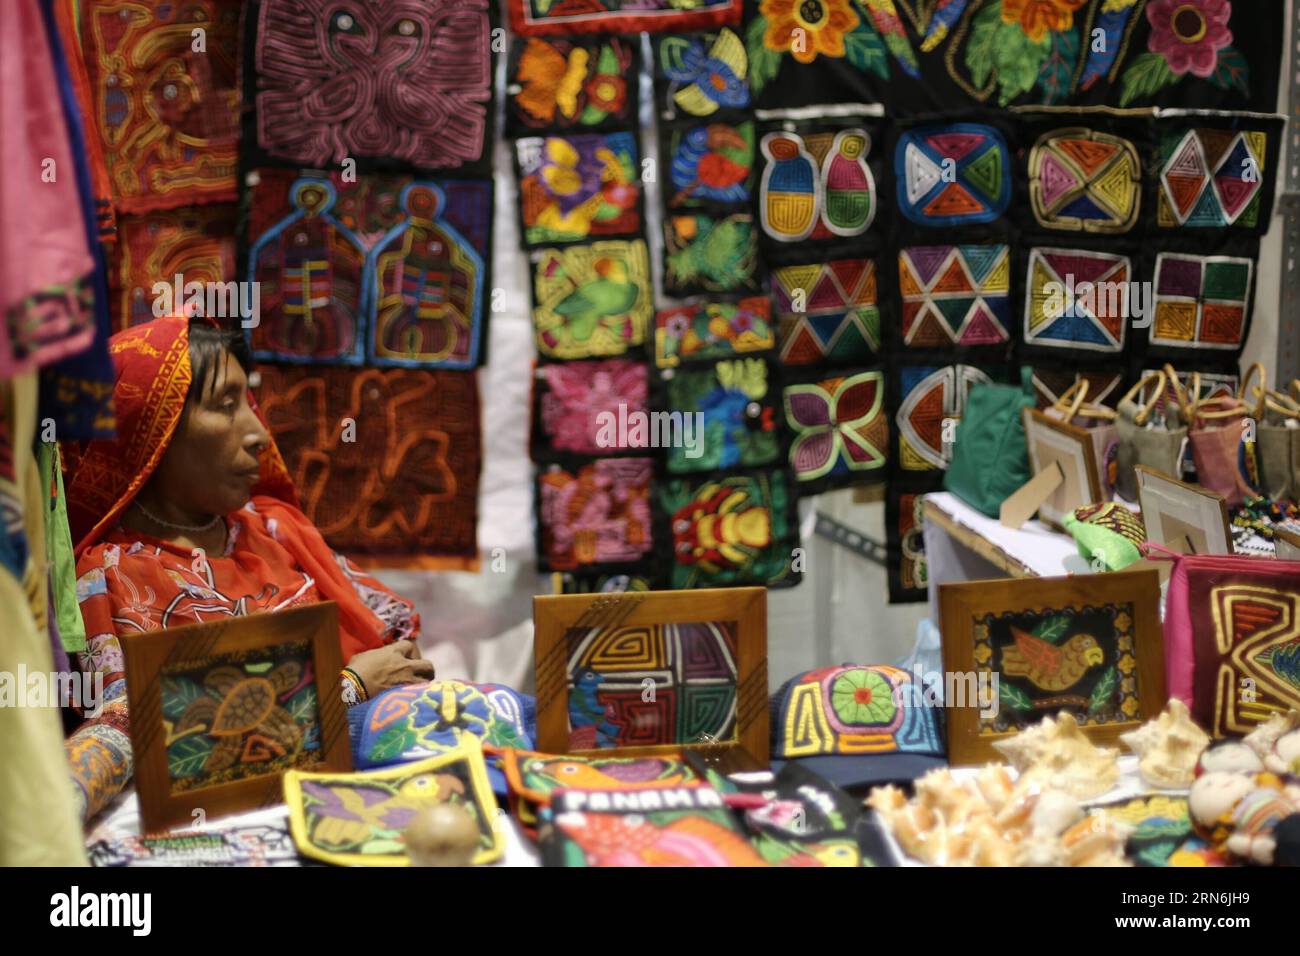 PANAMA CITY, 29 juillet 2015 -- une artisan expose ses créations sur un stand lors de la Foire nationale de l'artisanat de Panama, dans la ville de Panama, capitale du Panama, le 29 juillet 2015. La 38e Foire nationale de l'artisanat du Panama a commencé mercredi soir au Centre des Conventions d'Atlapa. ) (Dzl) PANAMA-PANAMA CITY-CRAFT-FAIR MAURICIOxVALENZUELA PUBLICATIONxNOTxINxCHN Panama City juillet 29 2015 à Artisan montre ses créations dans un stand lors de la Foire nationale de l'artisanat de Panama dans la ville de Panama capitale de Panama LE 29 2015 juillet la 38e Foire nationale de l'artisanat de Panama a commencé LE mercredi N. Banque D'Images